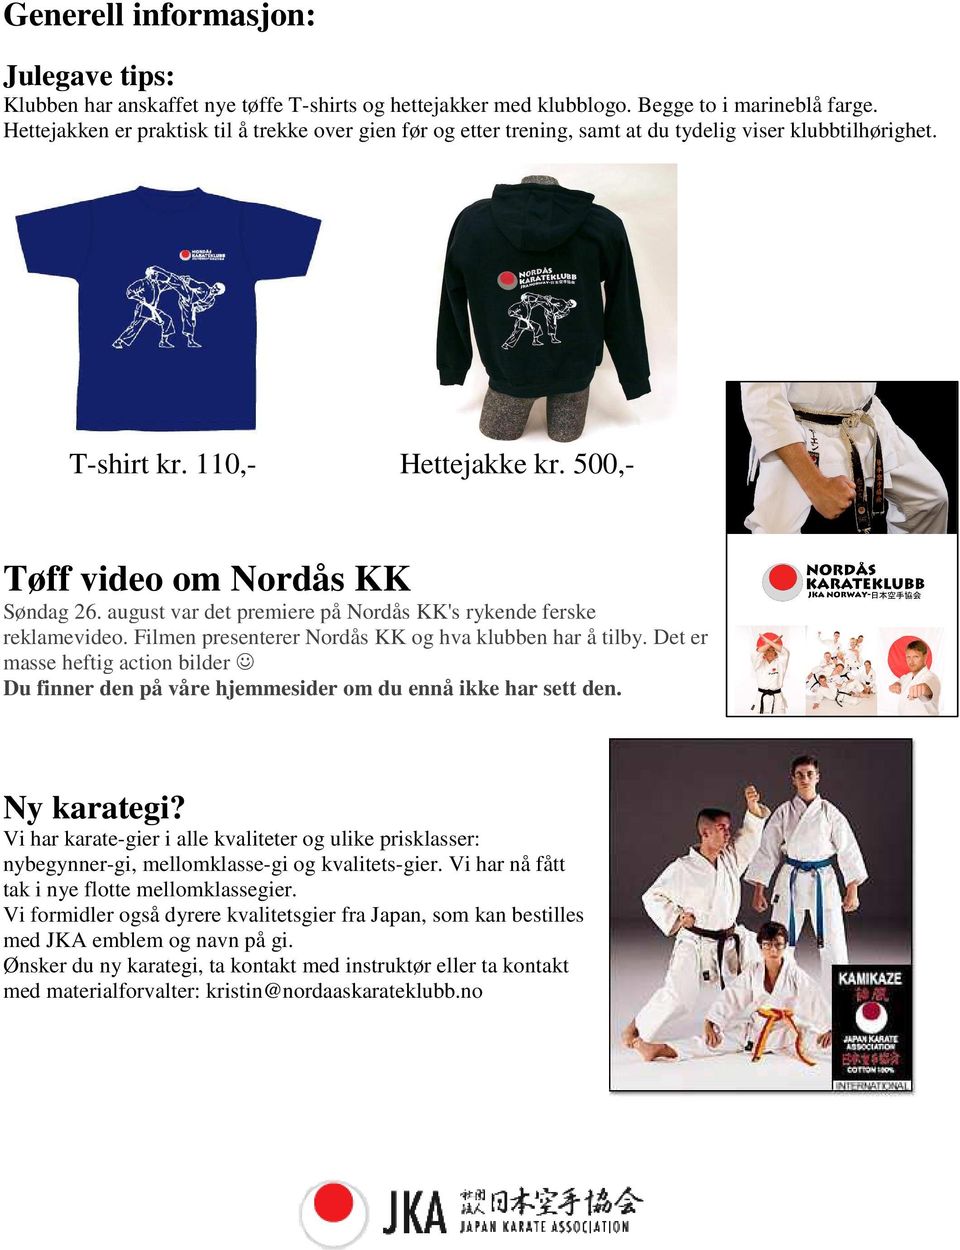 august var det premiere på Nordås KK's rykende ferske reklamevideo. Filmen presenterer Nordås KK og hva klubben har å tilby.